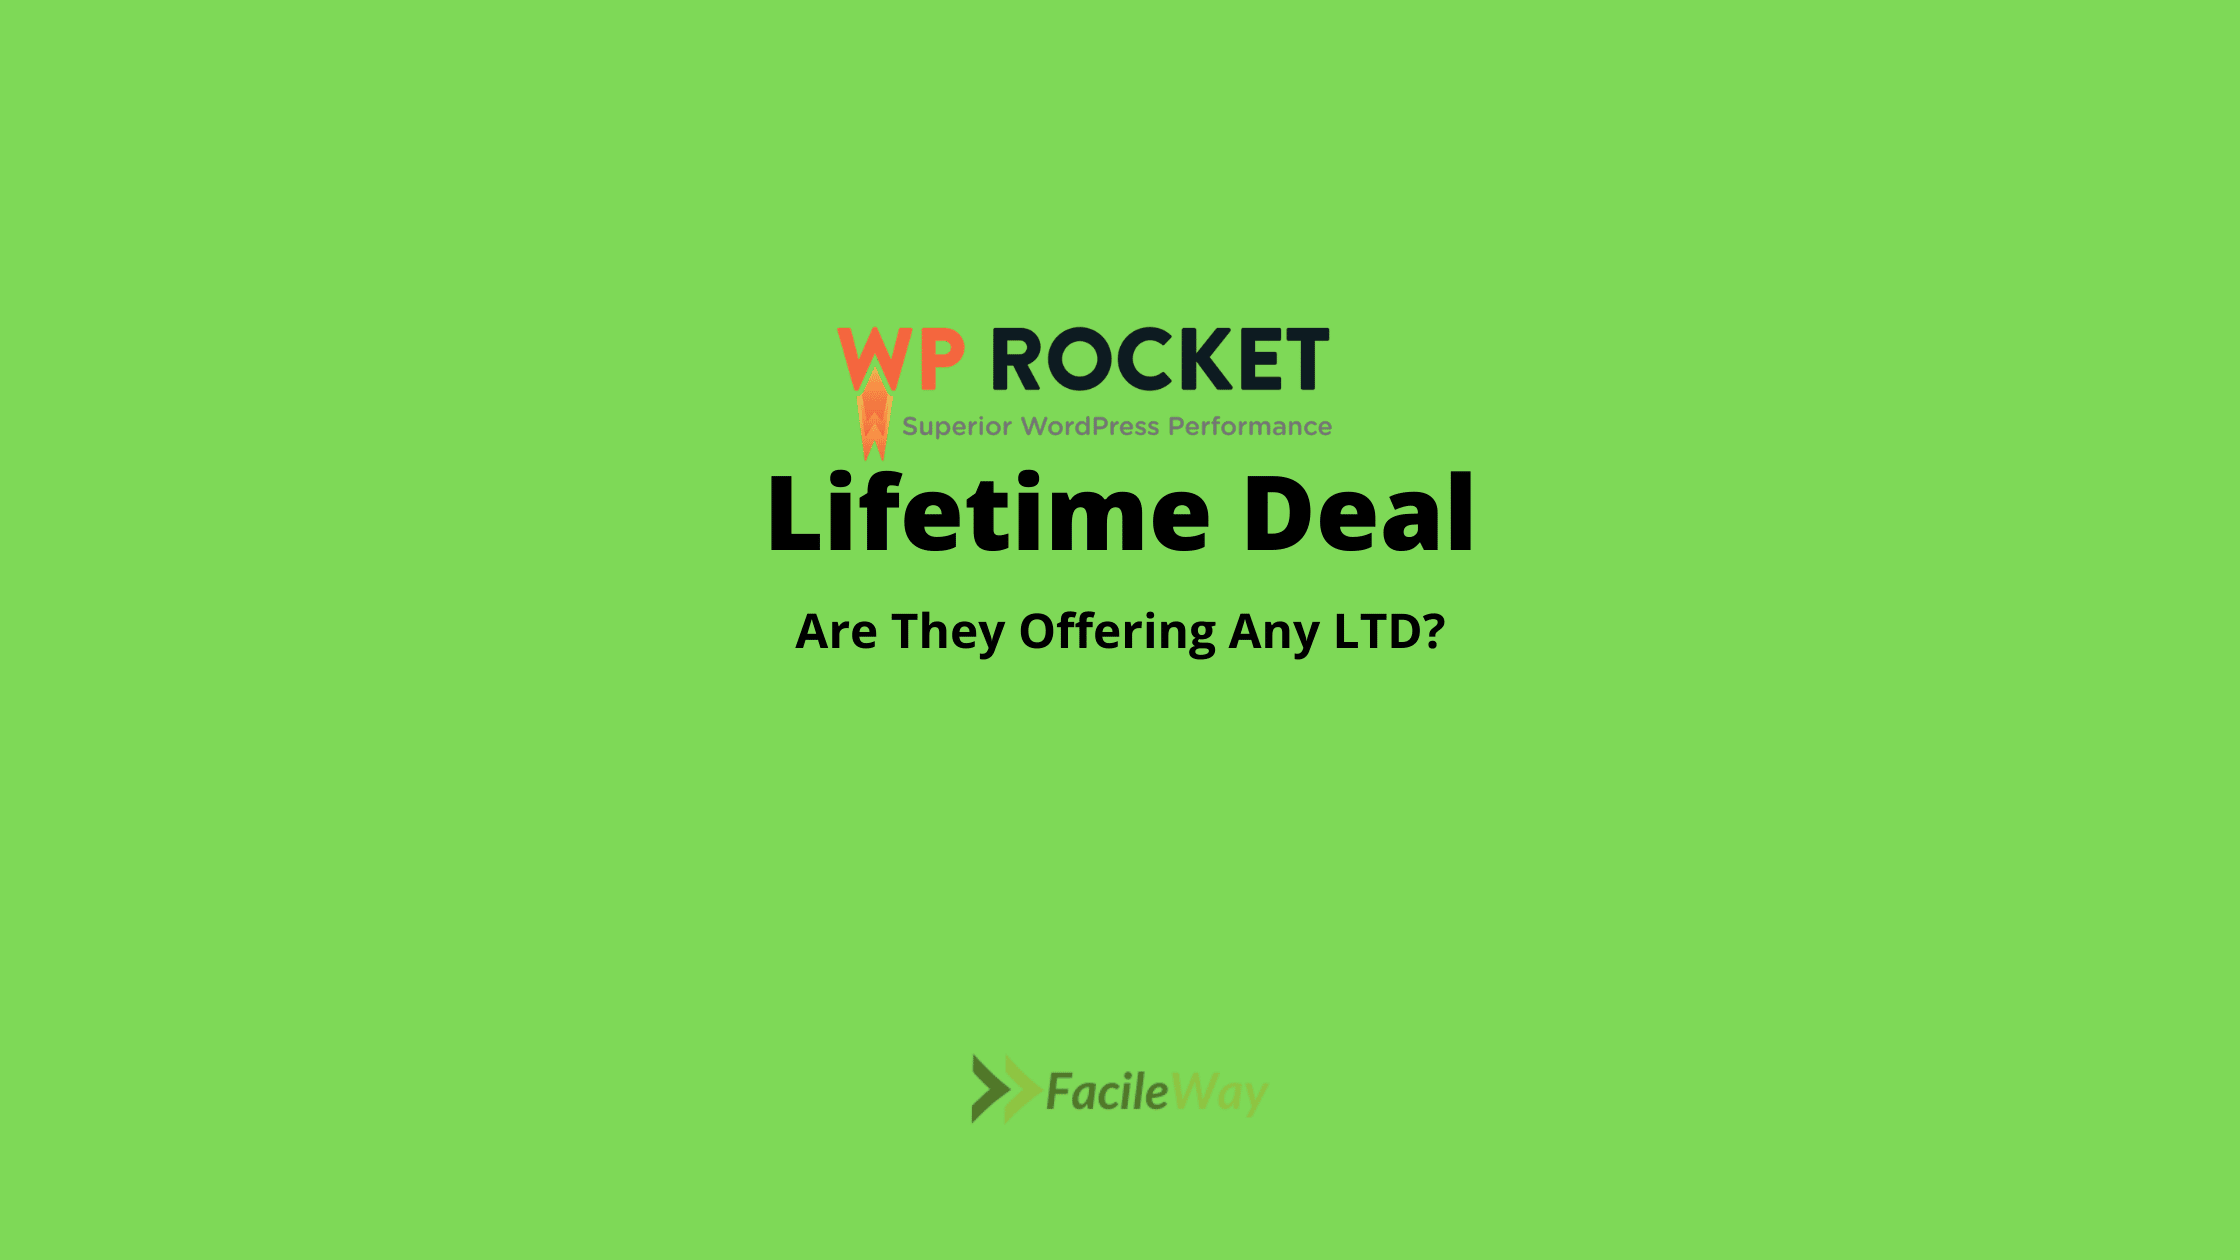 WP Rocket Lifetime Deal